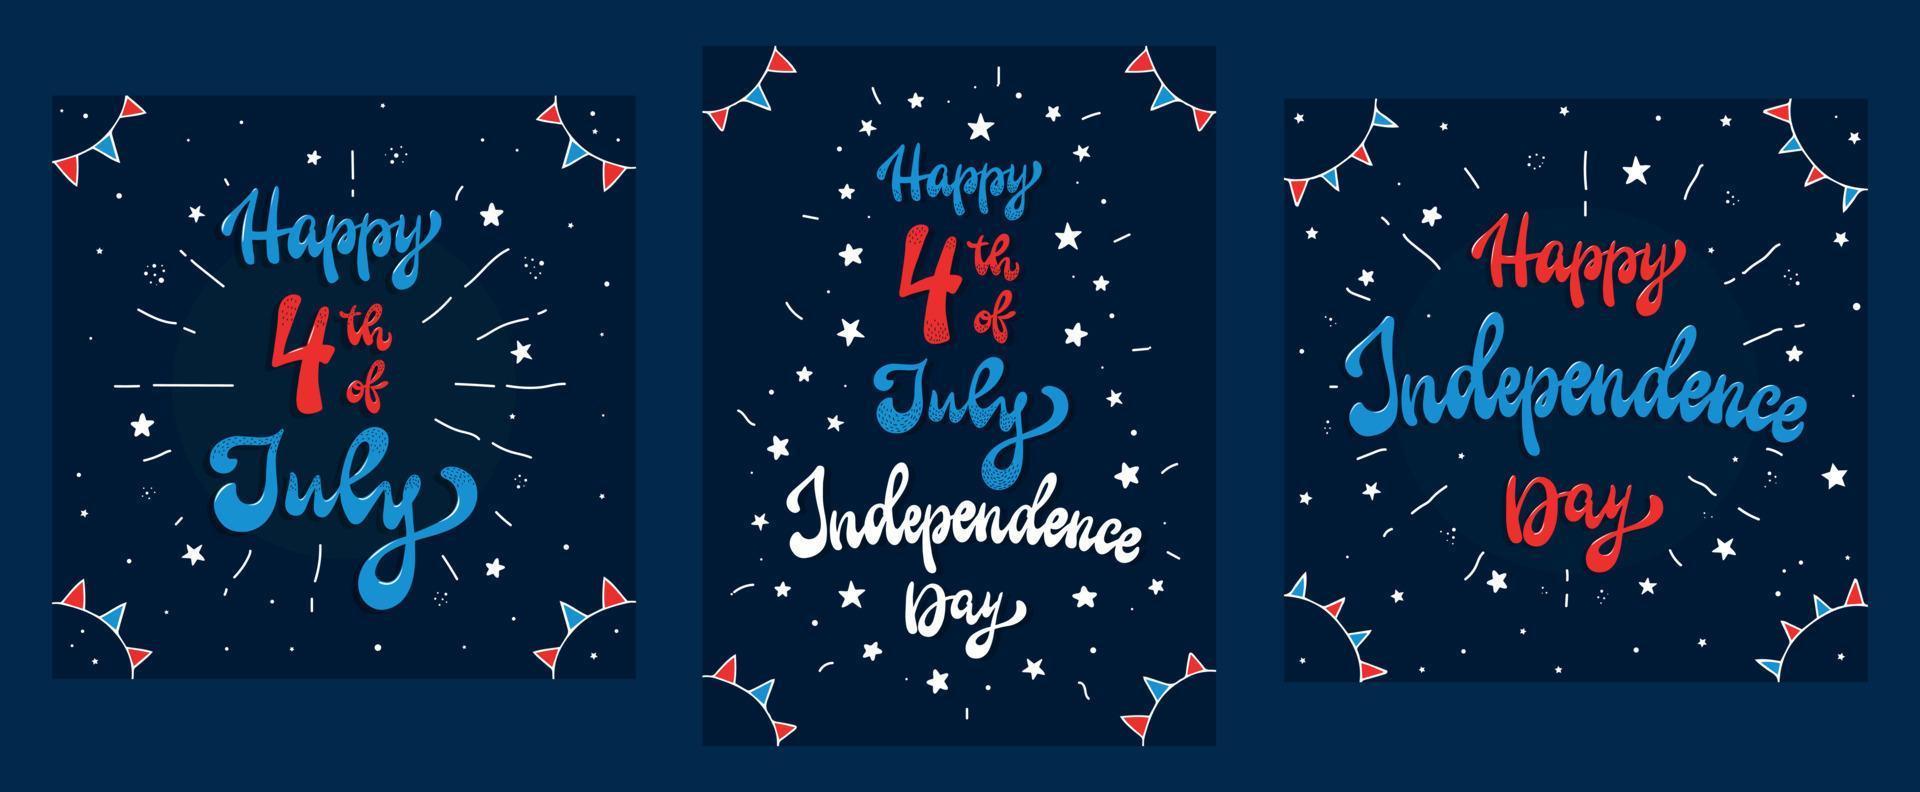 conjunto de tarjetas de felicitación, carteles para el 4 de julio, día de la independencia. citas con letras a mano decoradas con estrellas y banderas sobre fondo azul. eps 10 vector